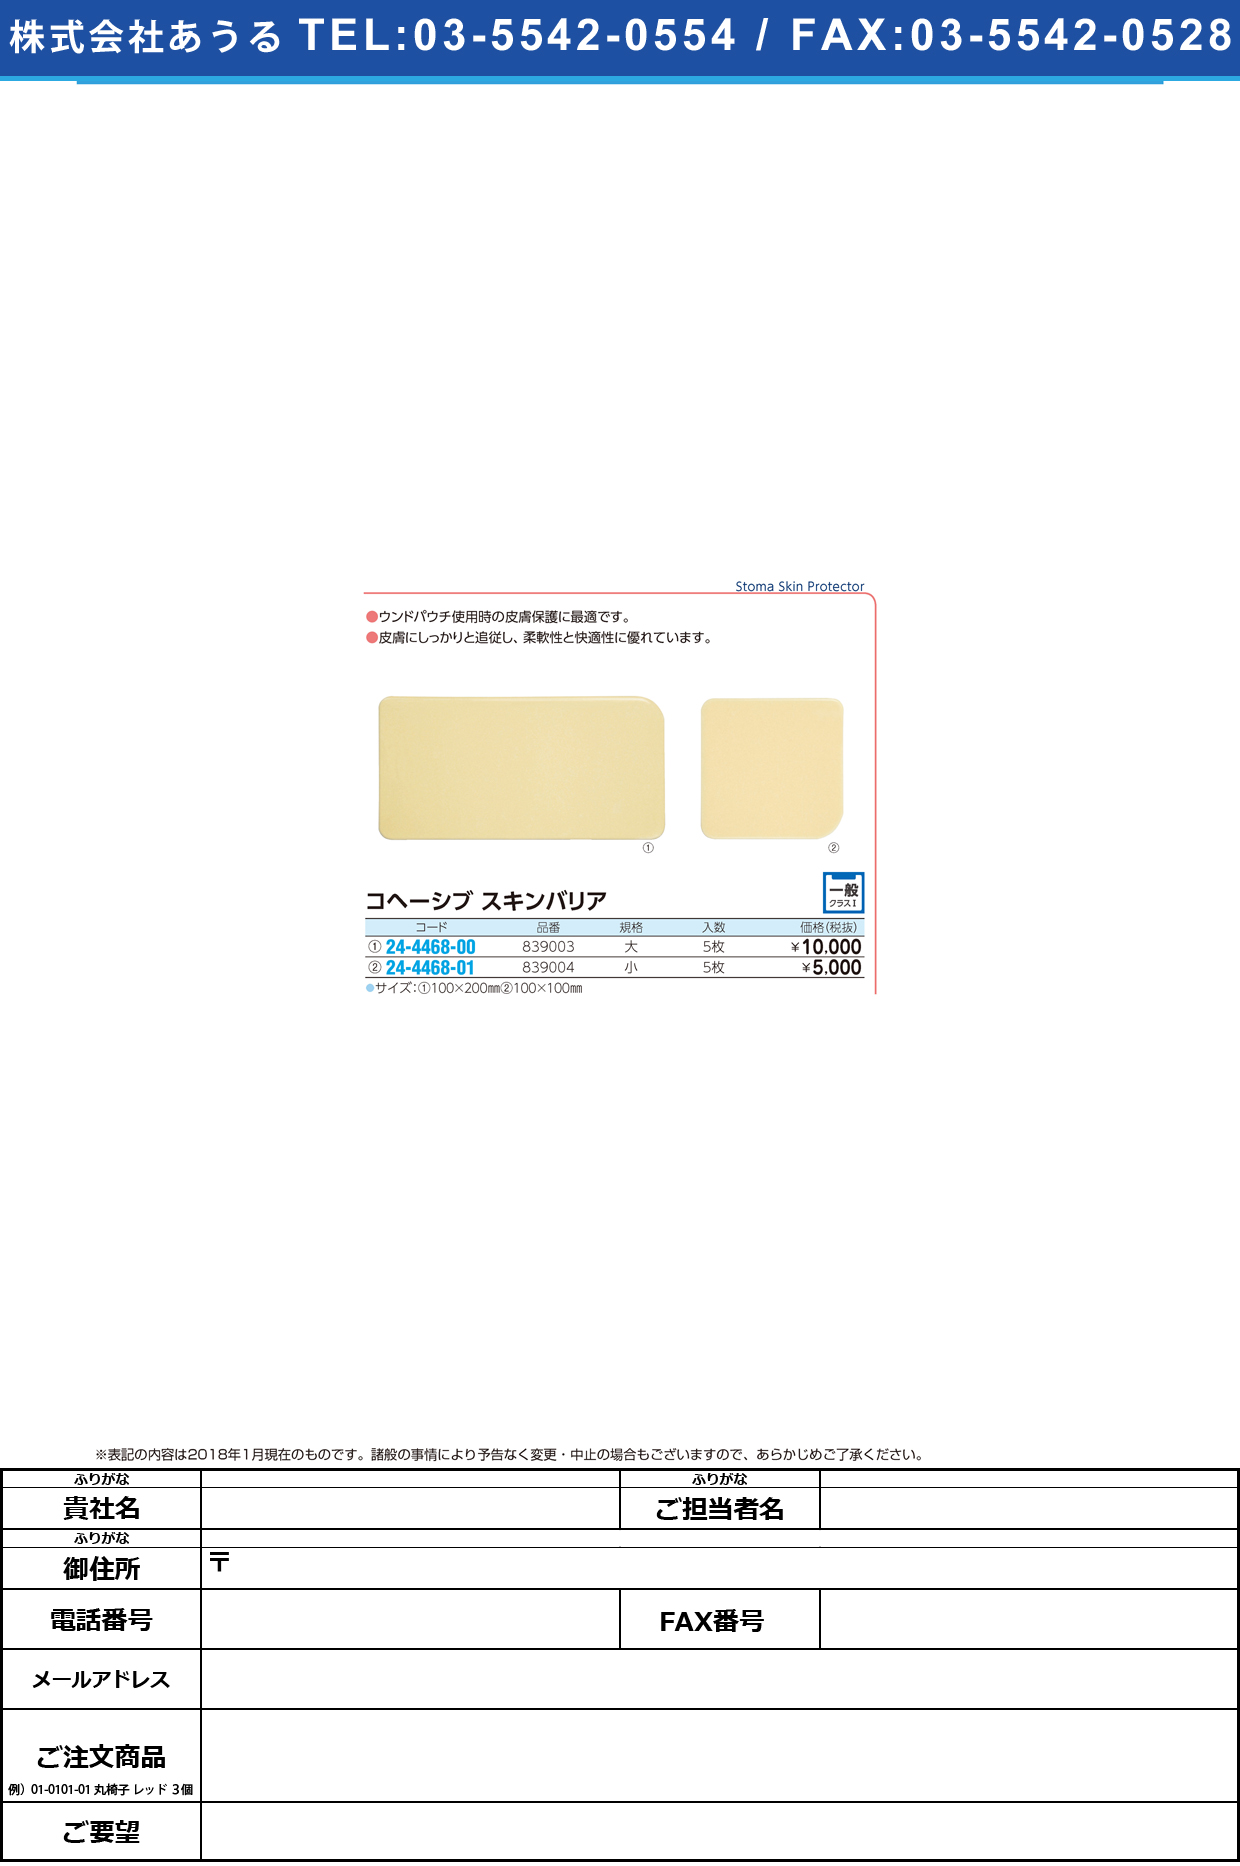 (24-4468-00)コヘーシブスキンバリア 839003(ﾀﾞｲ)5ﾏｲ ｺﾍｰｼﾌﾞｽｷﾝﾊﾞﾘｱ【1箱単位】【2019年カタログ商品】